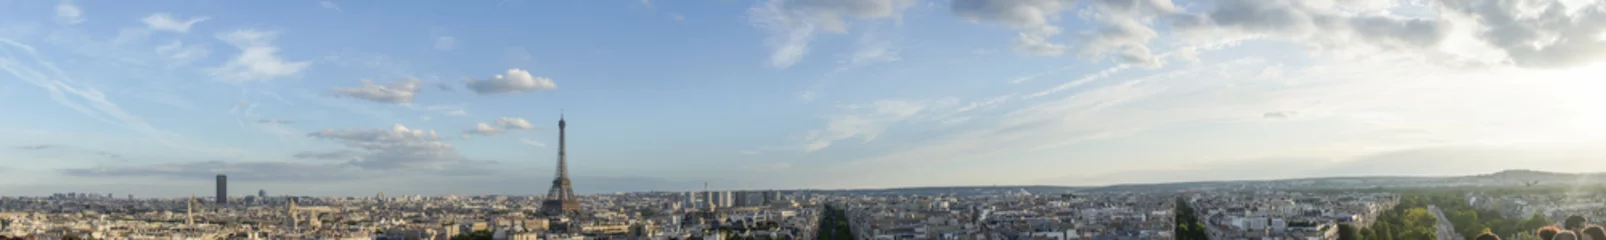 Foto op Plexiglas Parijs panoramisch landschap van parijs